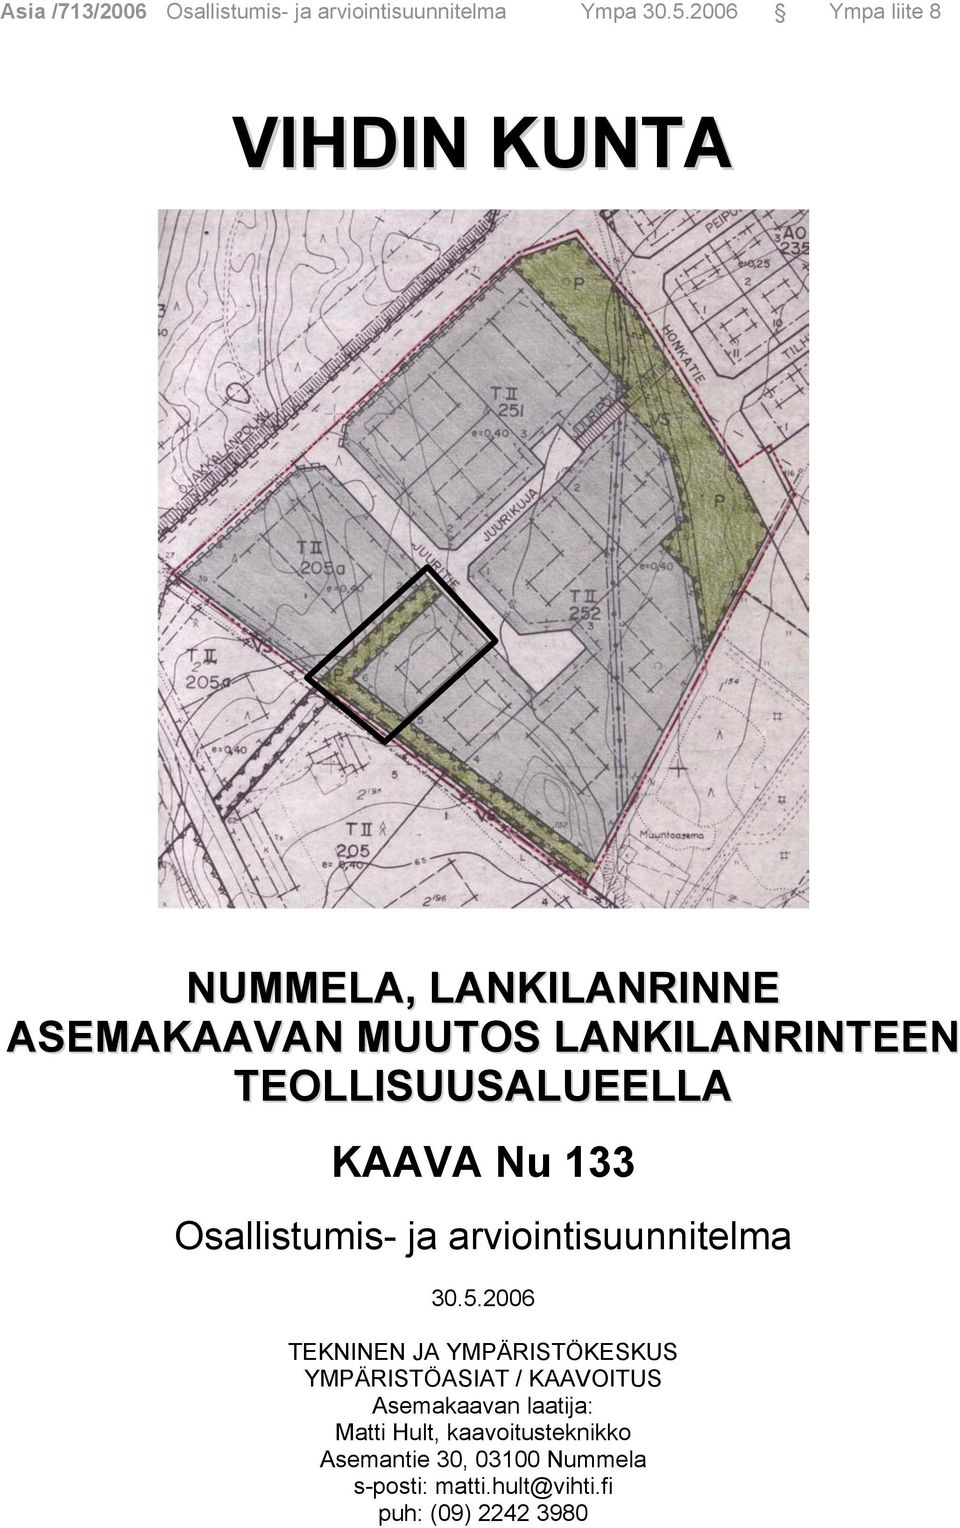 TEOLLISUUSALUEELLA KAAVA Nu 133 Osallistumis- ja arviointisuunnitelma 30.5.